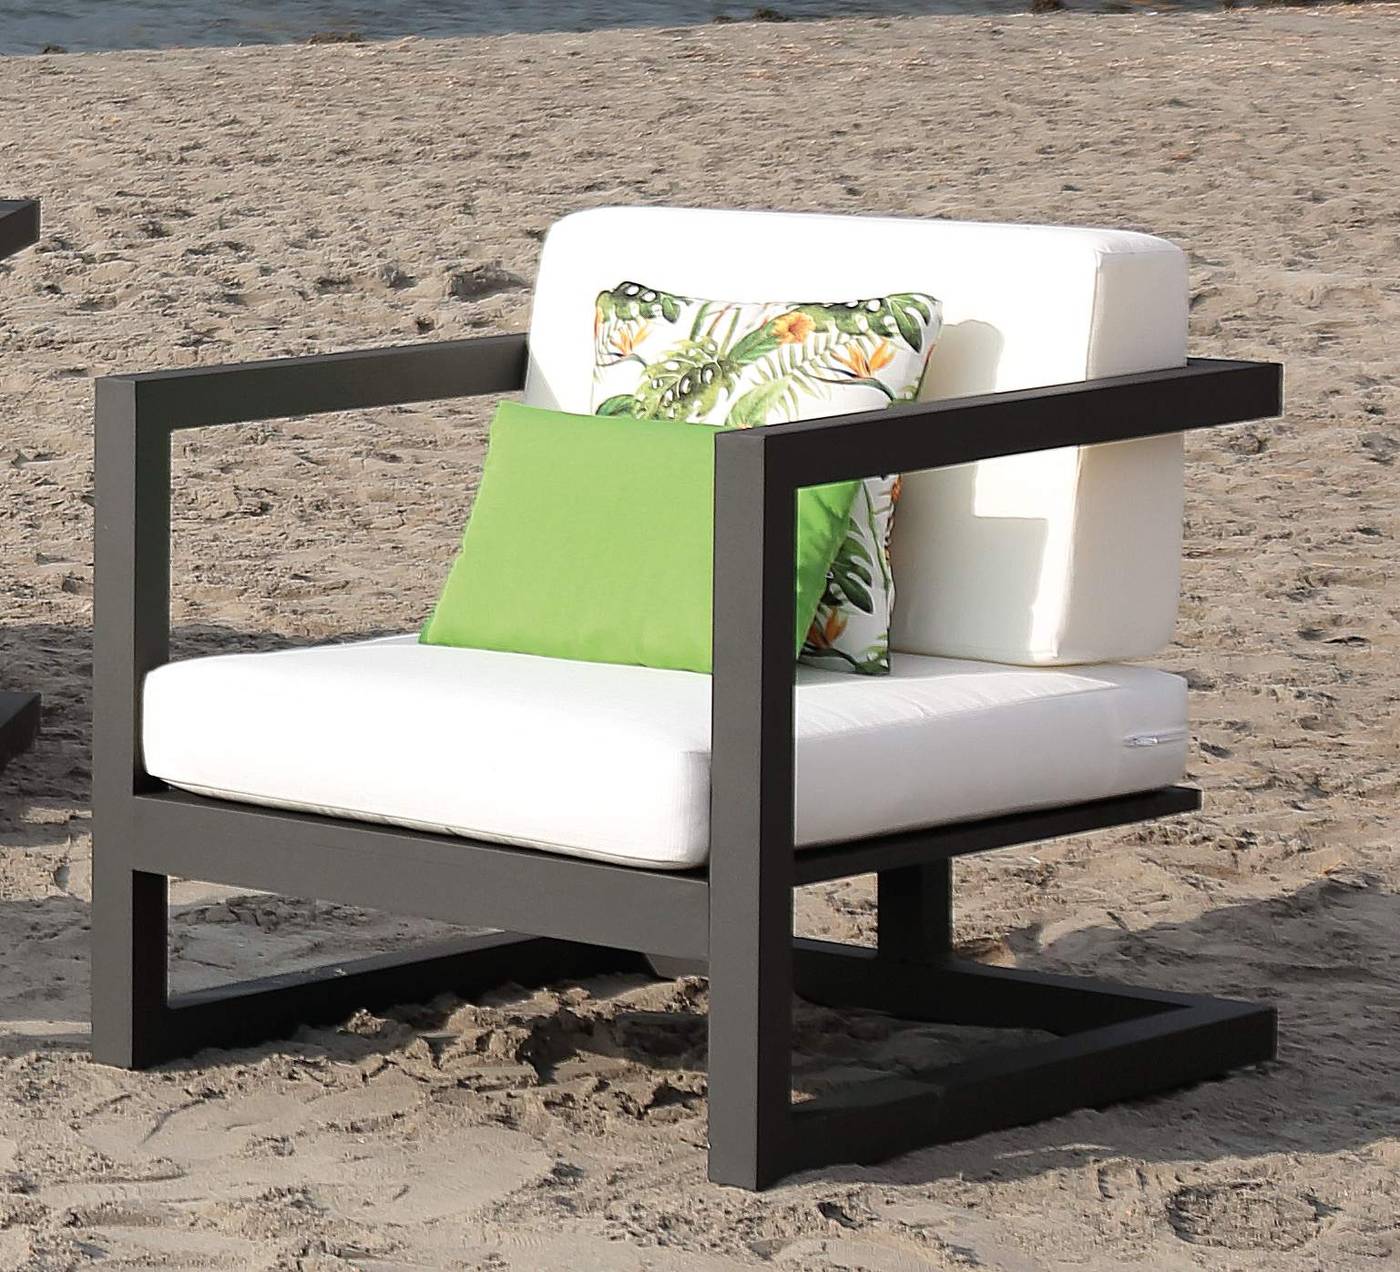 Set Aluminio Alhama-8 - Conjunto aluminio: 1 sofá de 3 plazas + 2 sillones + 1 mesa de centro. Disponible en color blanco o antracita.